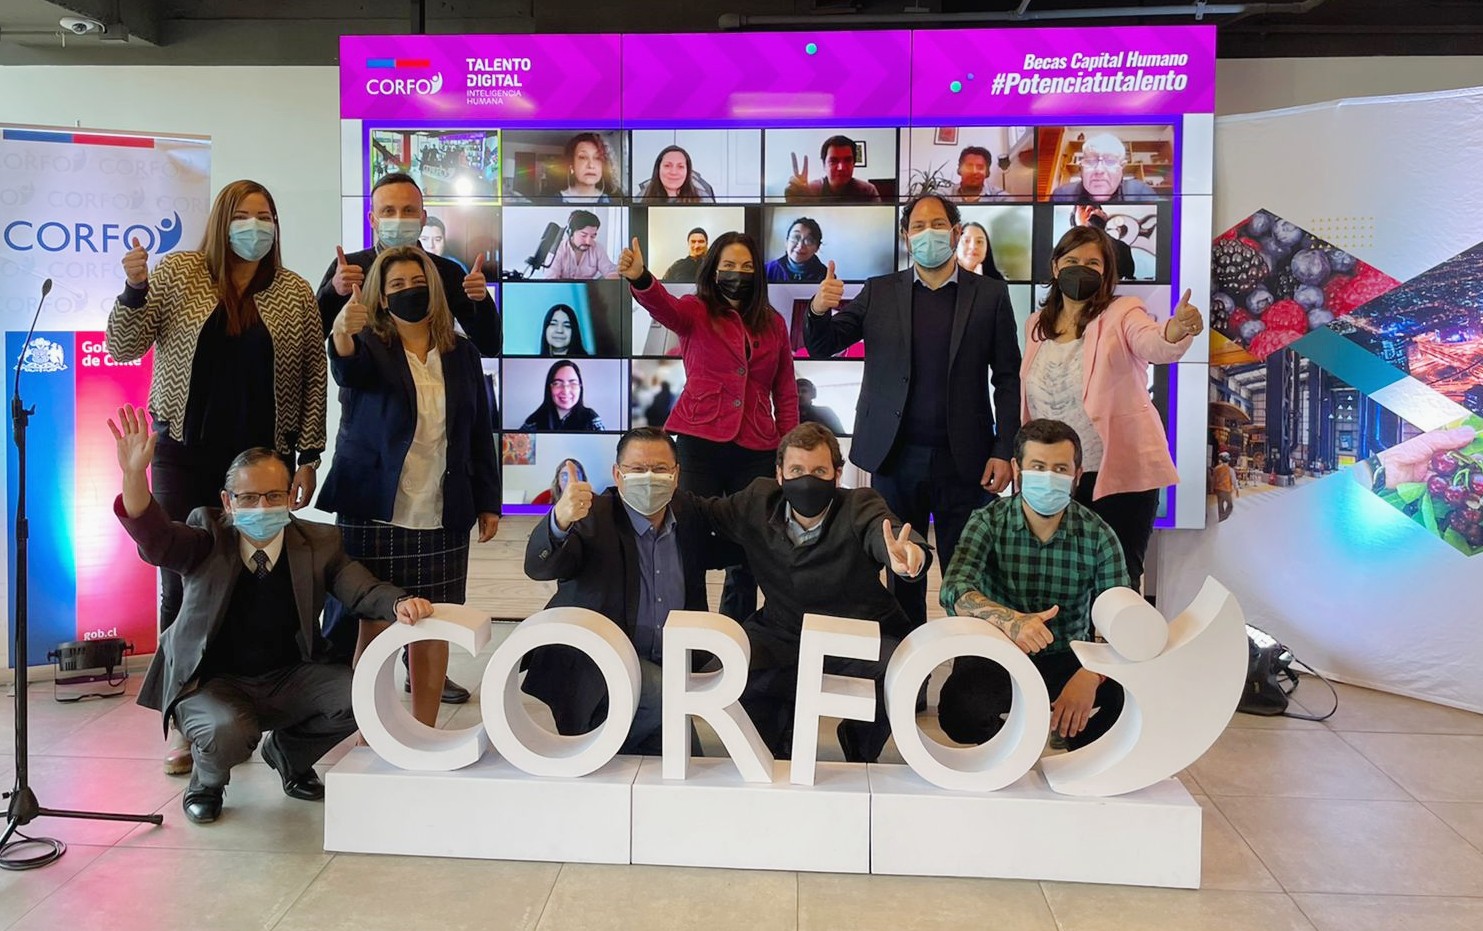 Corfo y Talento Digital para Chile anuncian “Potencia tu Talento”, nuevo programa de becas y cursos: Especializaciones tecnológicas, Marketing digital-comercio electrónico y Servicios para la industria creativa